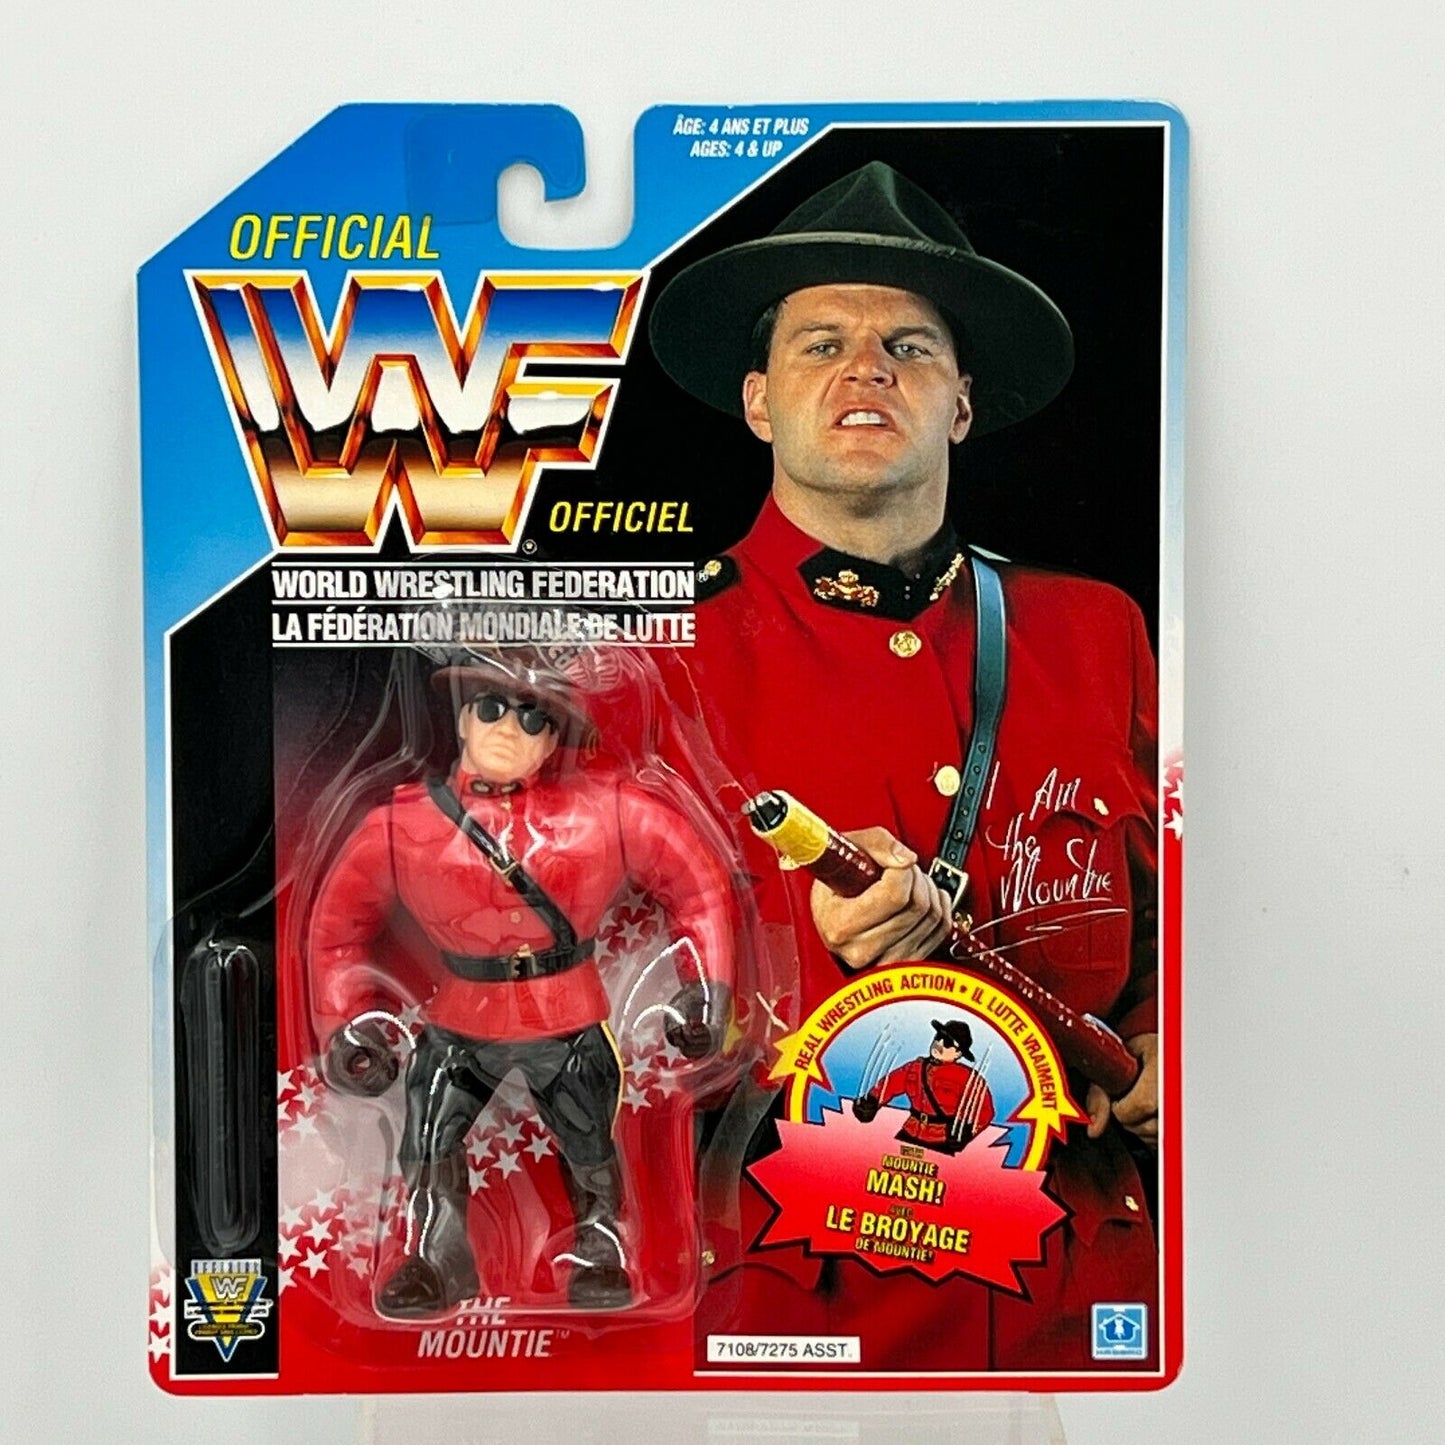 1993 WWF Hasbro Series 5 The Mountie with Mountie Mash!